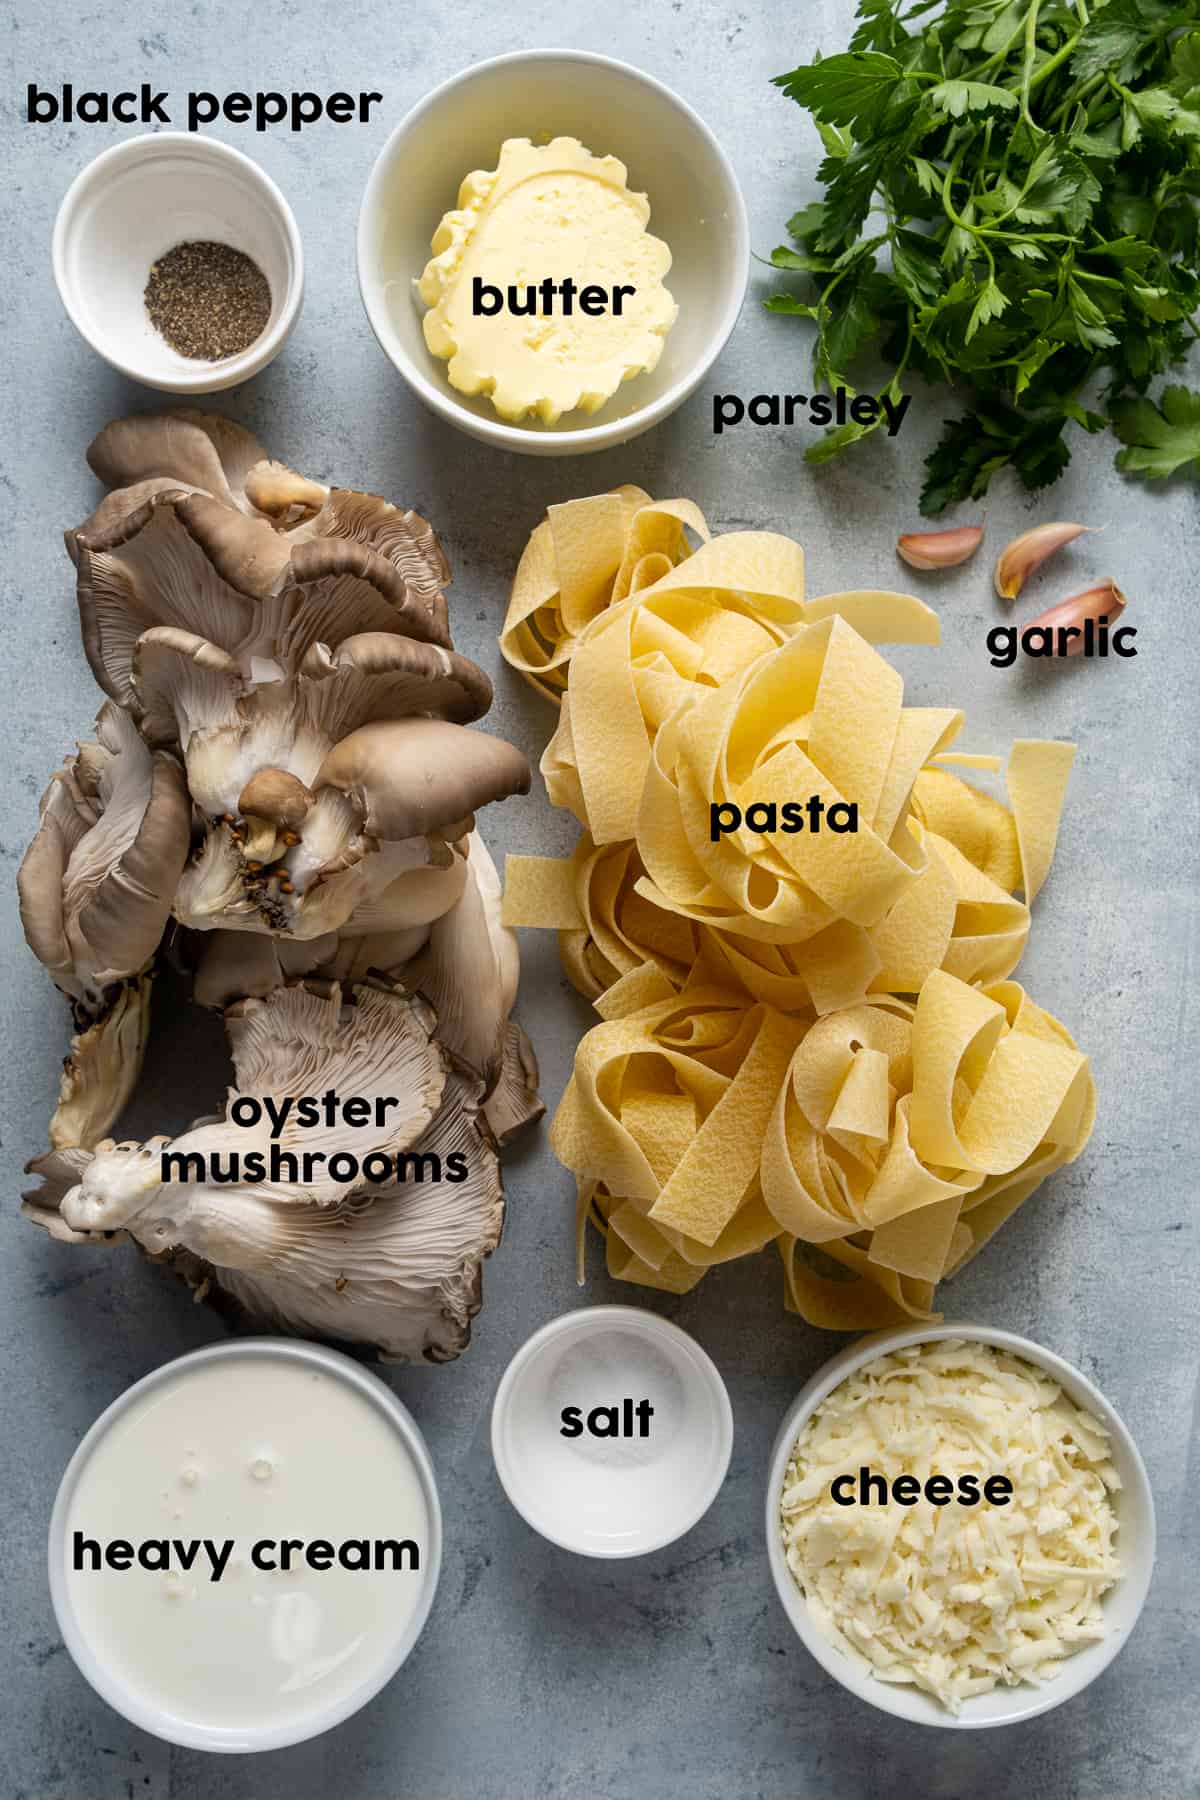 平菇，意大利面，蒜瓣，欧芹，黄油，浓奶油，磨碎的奶酪，盐和胡椒粉，灰色背景。